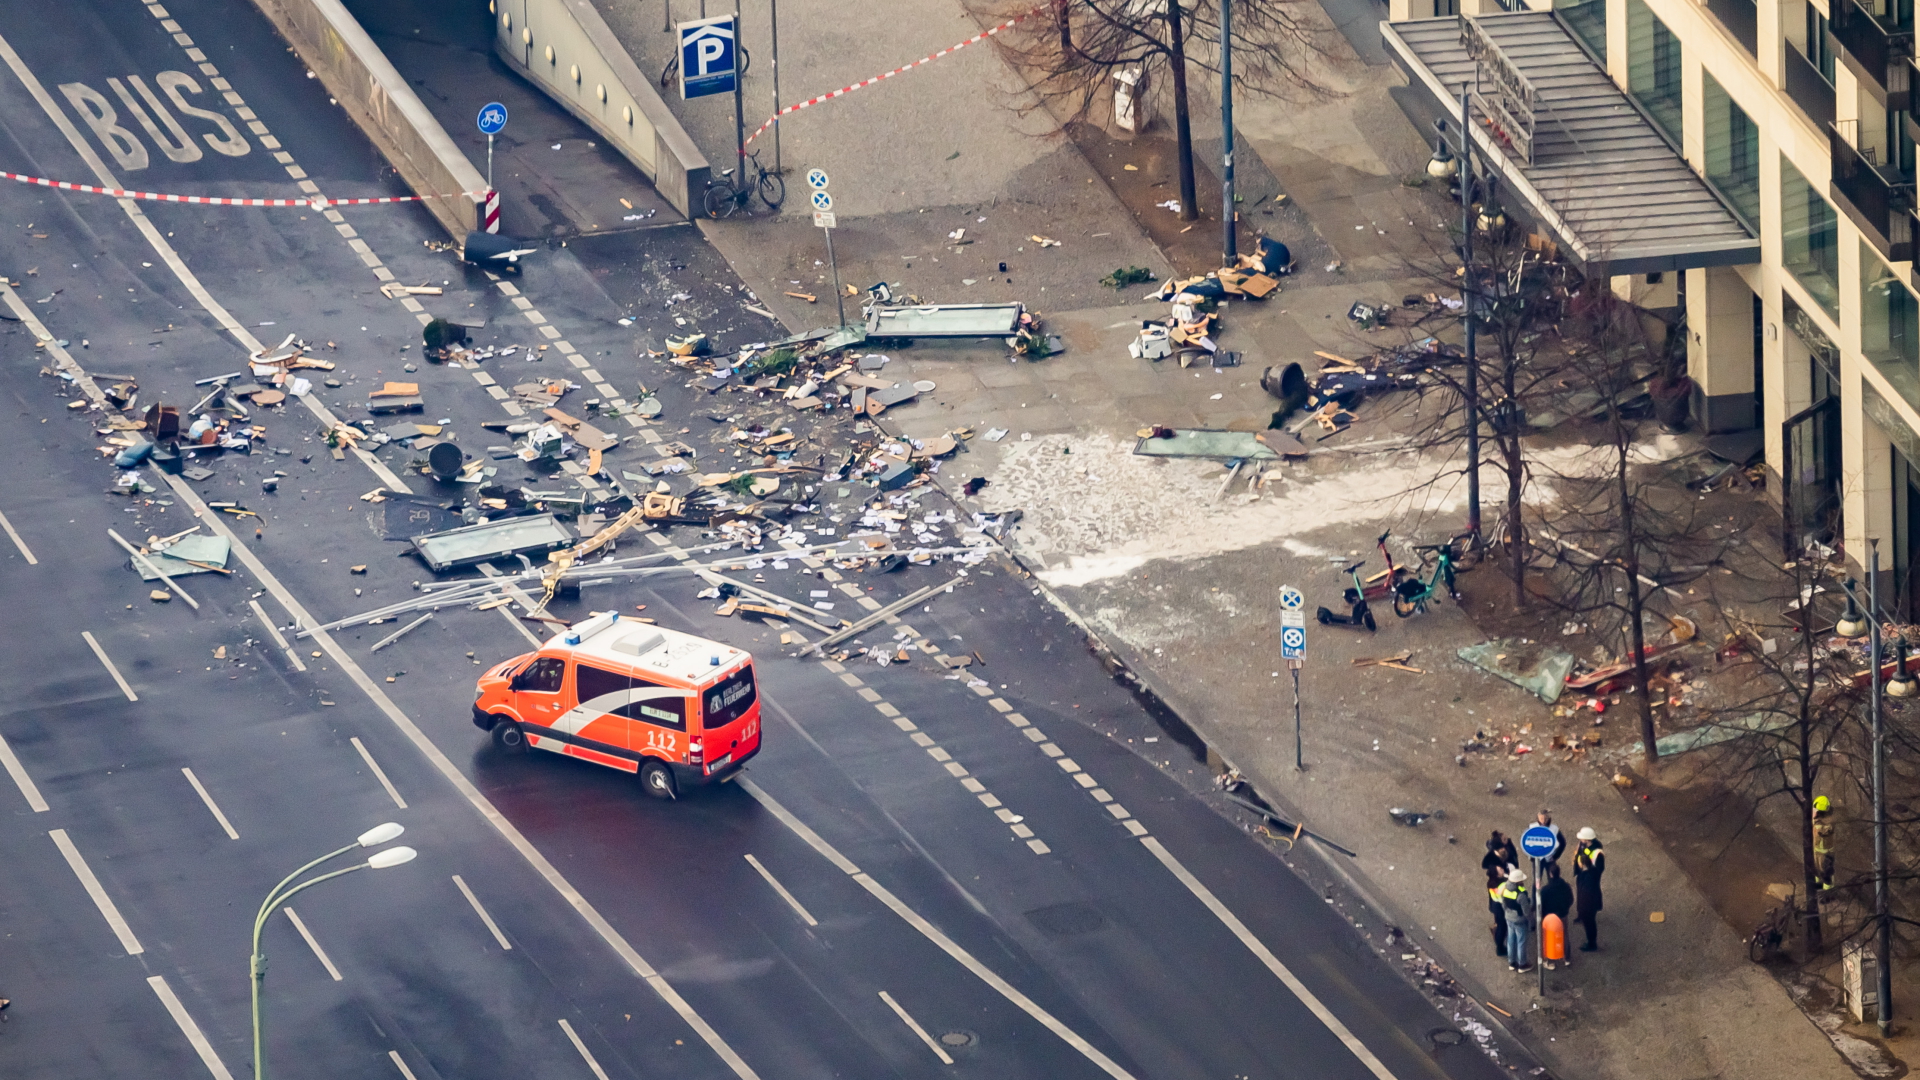 Trümmerteile liegen auf der abgesperrten Straße vor einem Berliner Hotel.